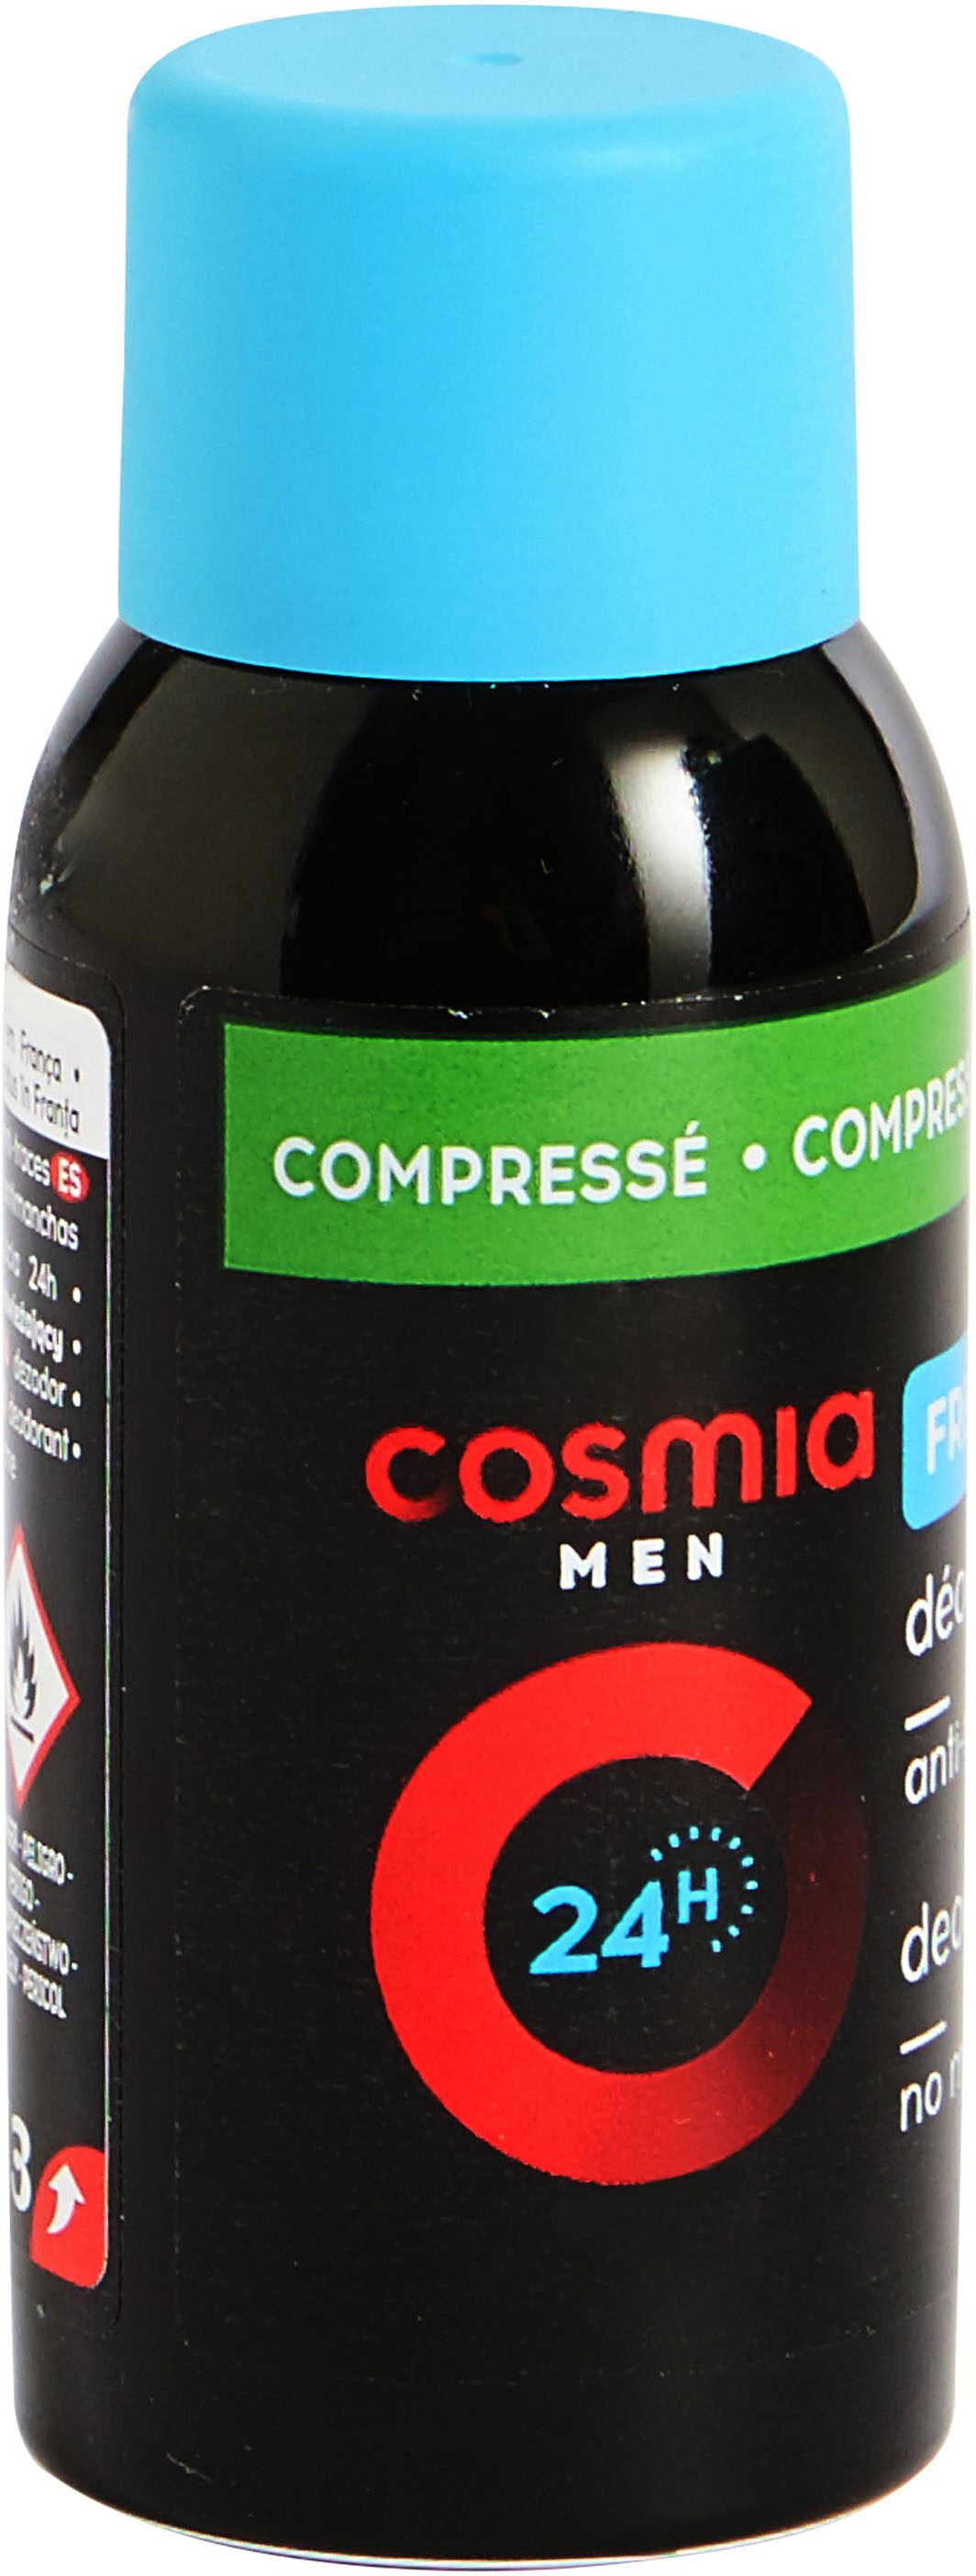 Cosmia deodorant homme atomiseur corps fraicheur 75 ml - Product - fr